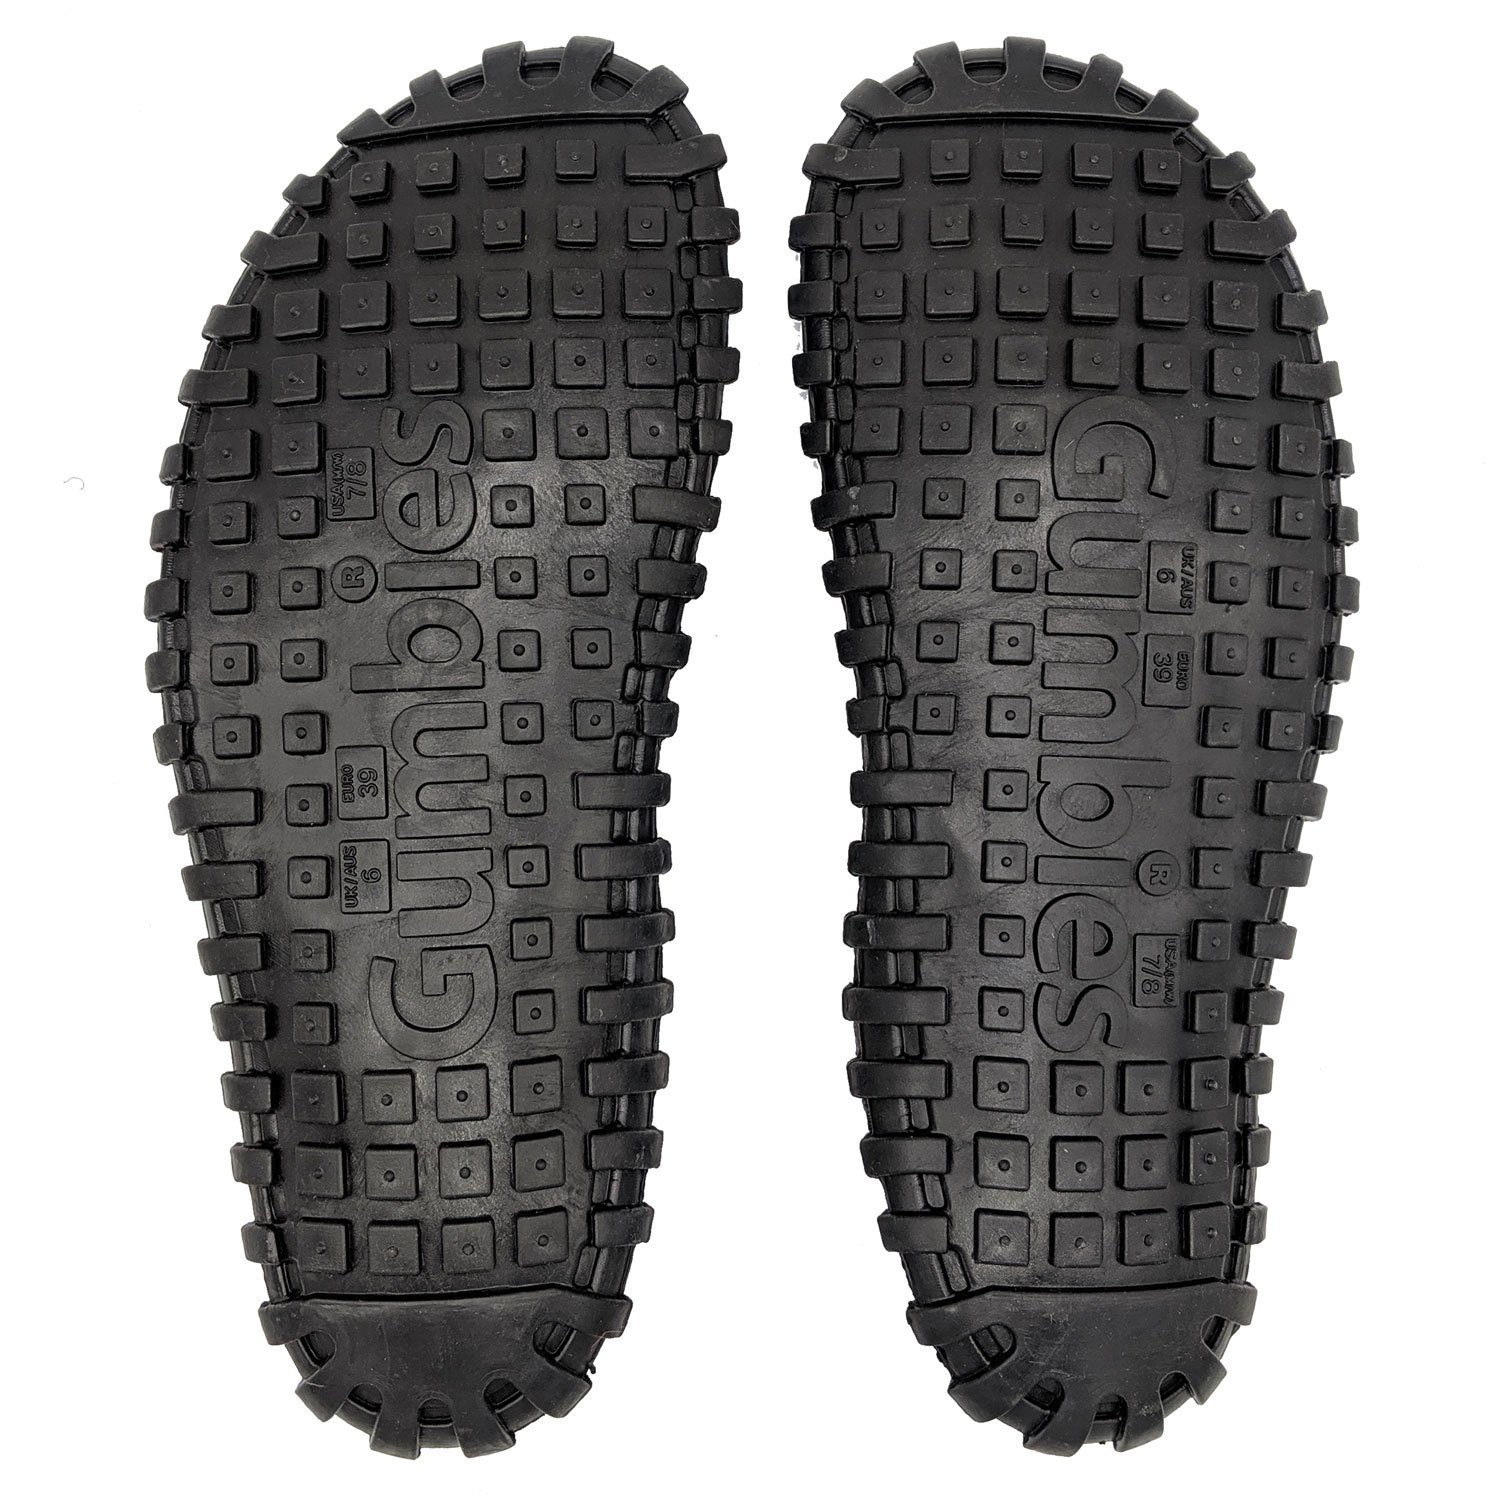 Materialien »in aus recycelten T-Strap-Zehentrenner Designs« farbenfrohen Black Gumbies black/grey Duckbills in